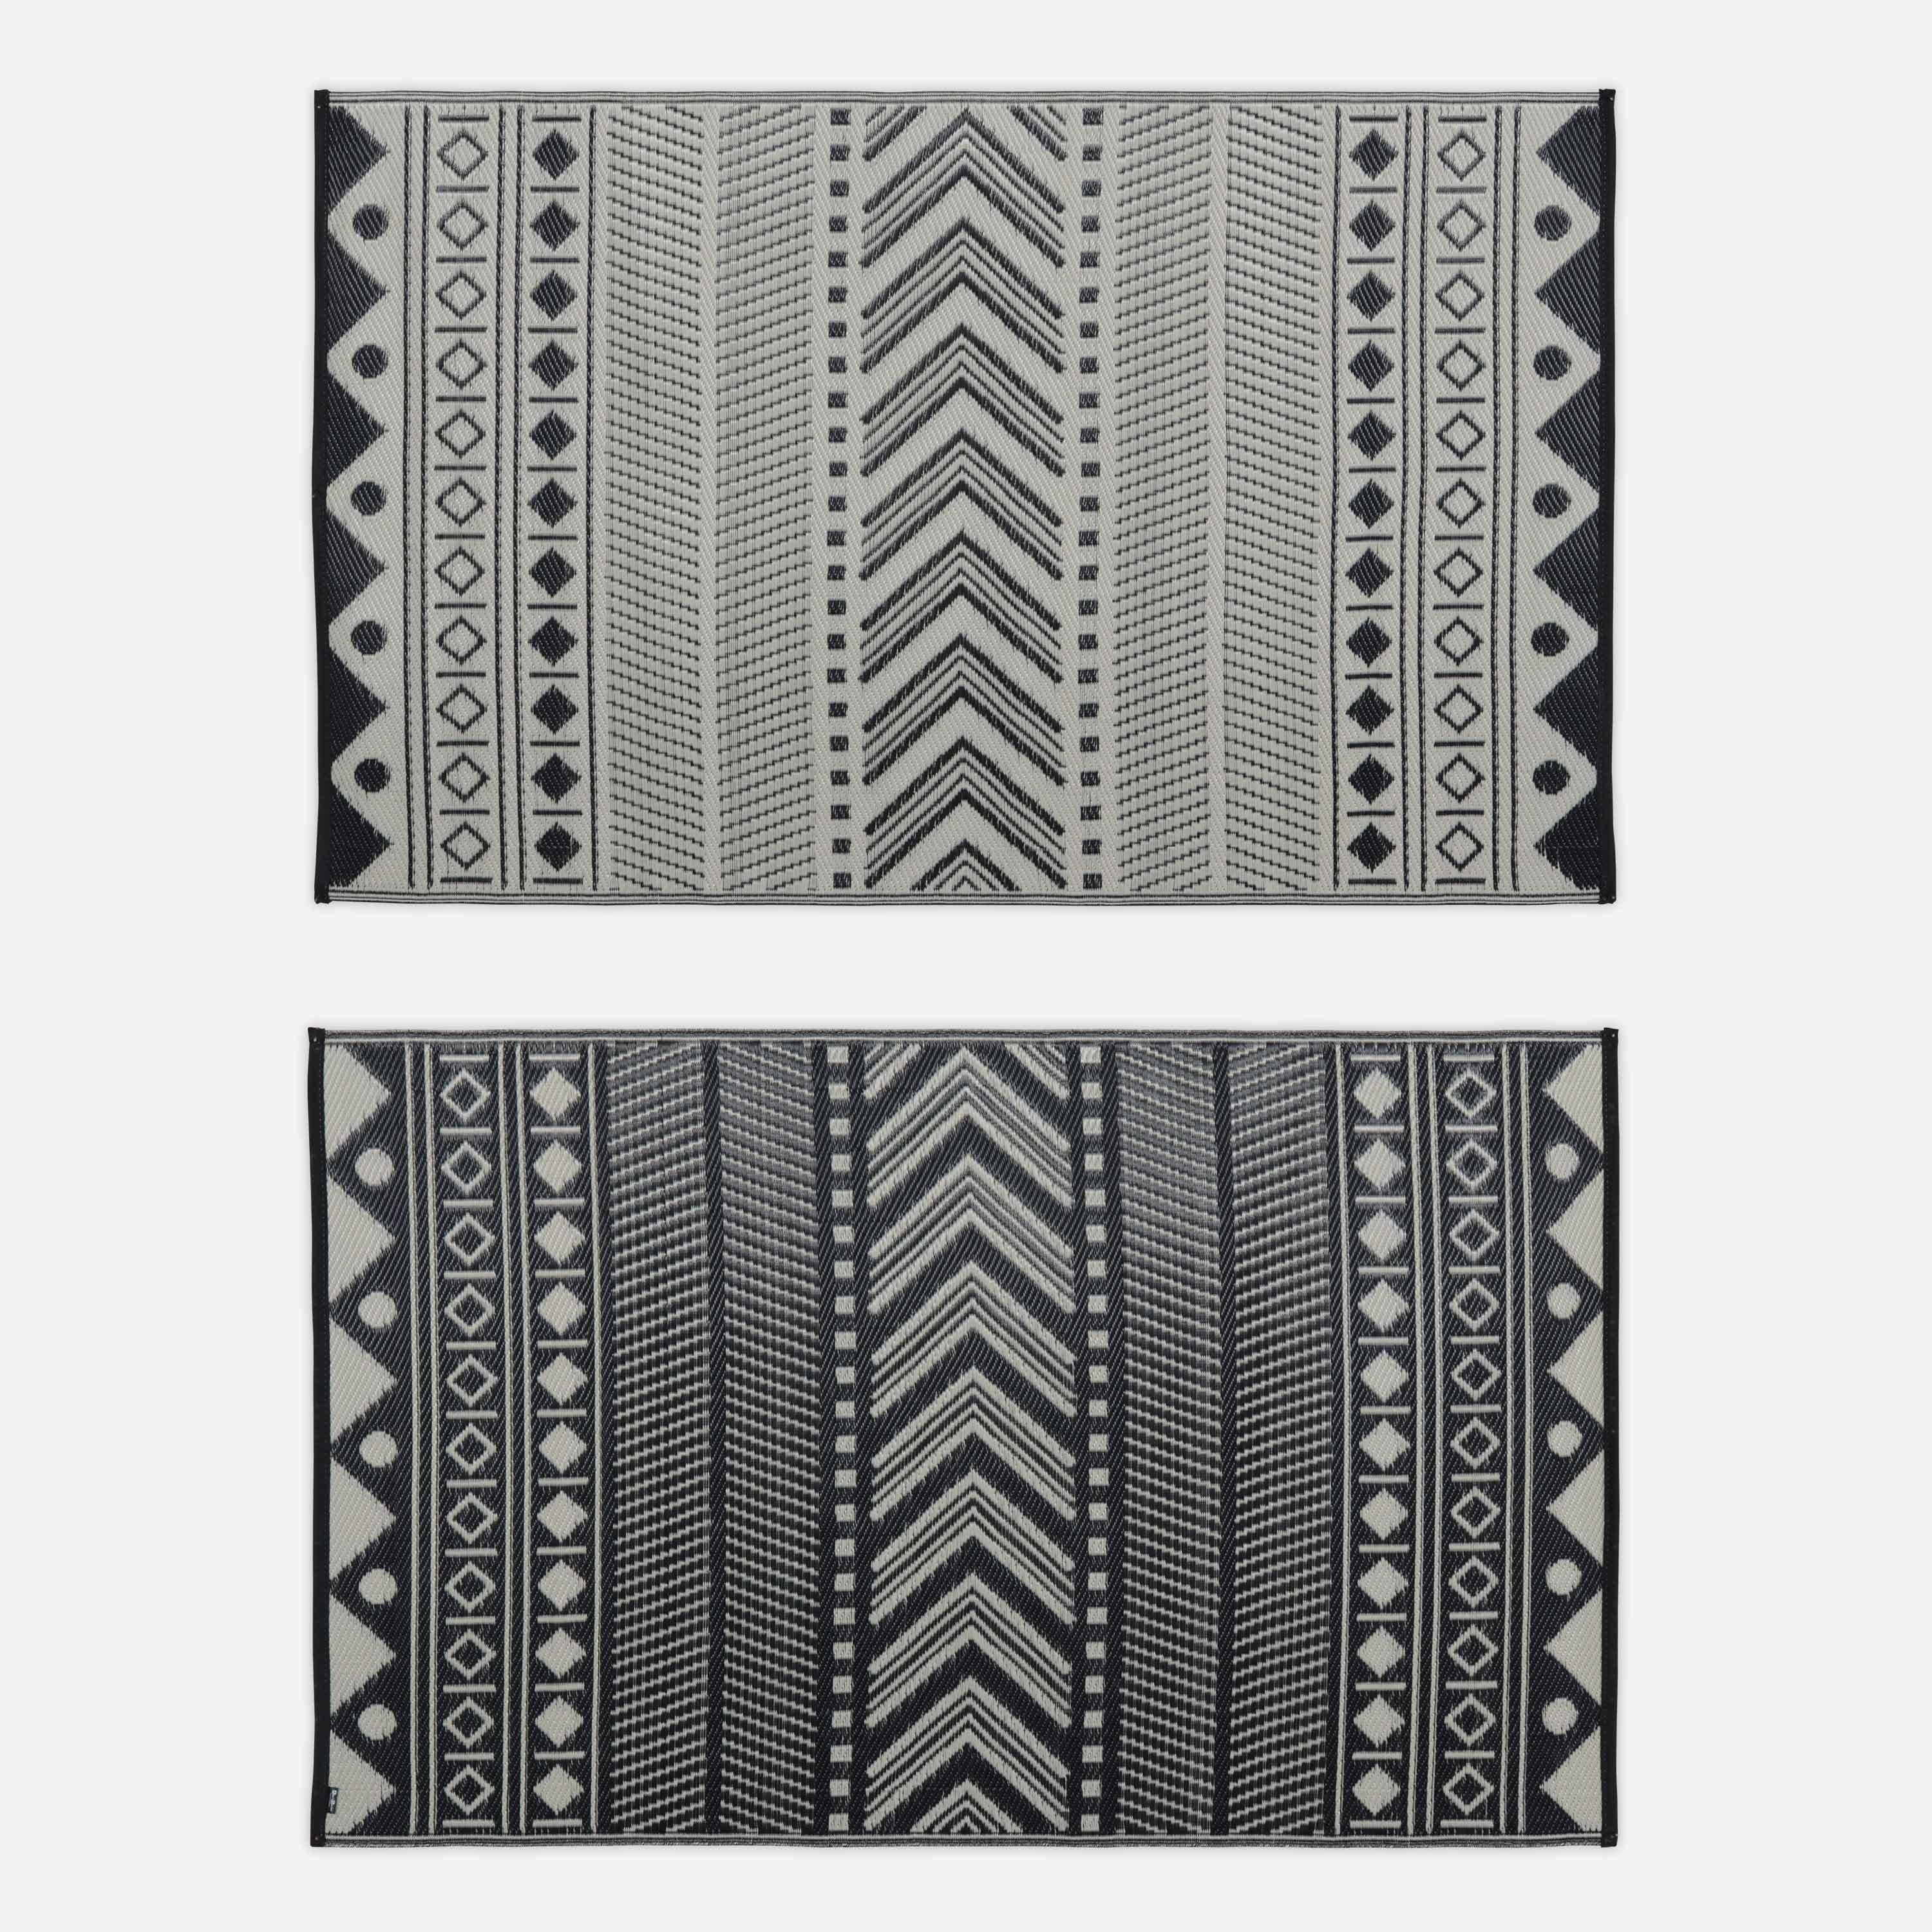 Outdoor rug - 120x180cm - Jacquard, reversible, rectangular, indoor/outdoor use - Bamako - Black-beige Photo2